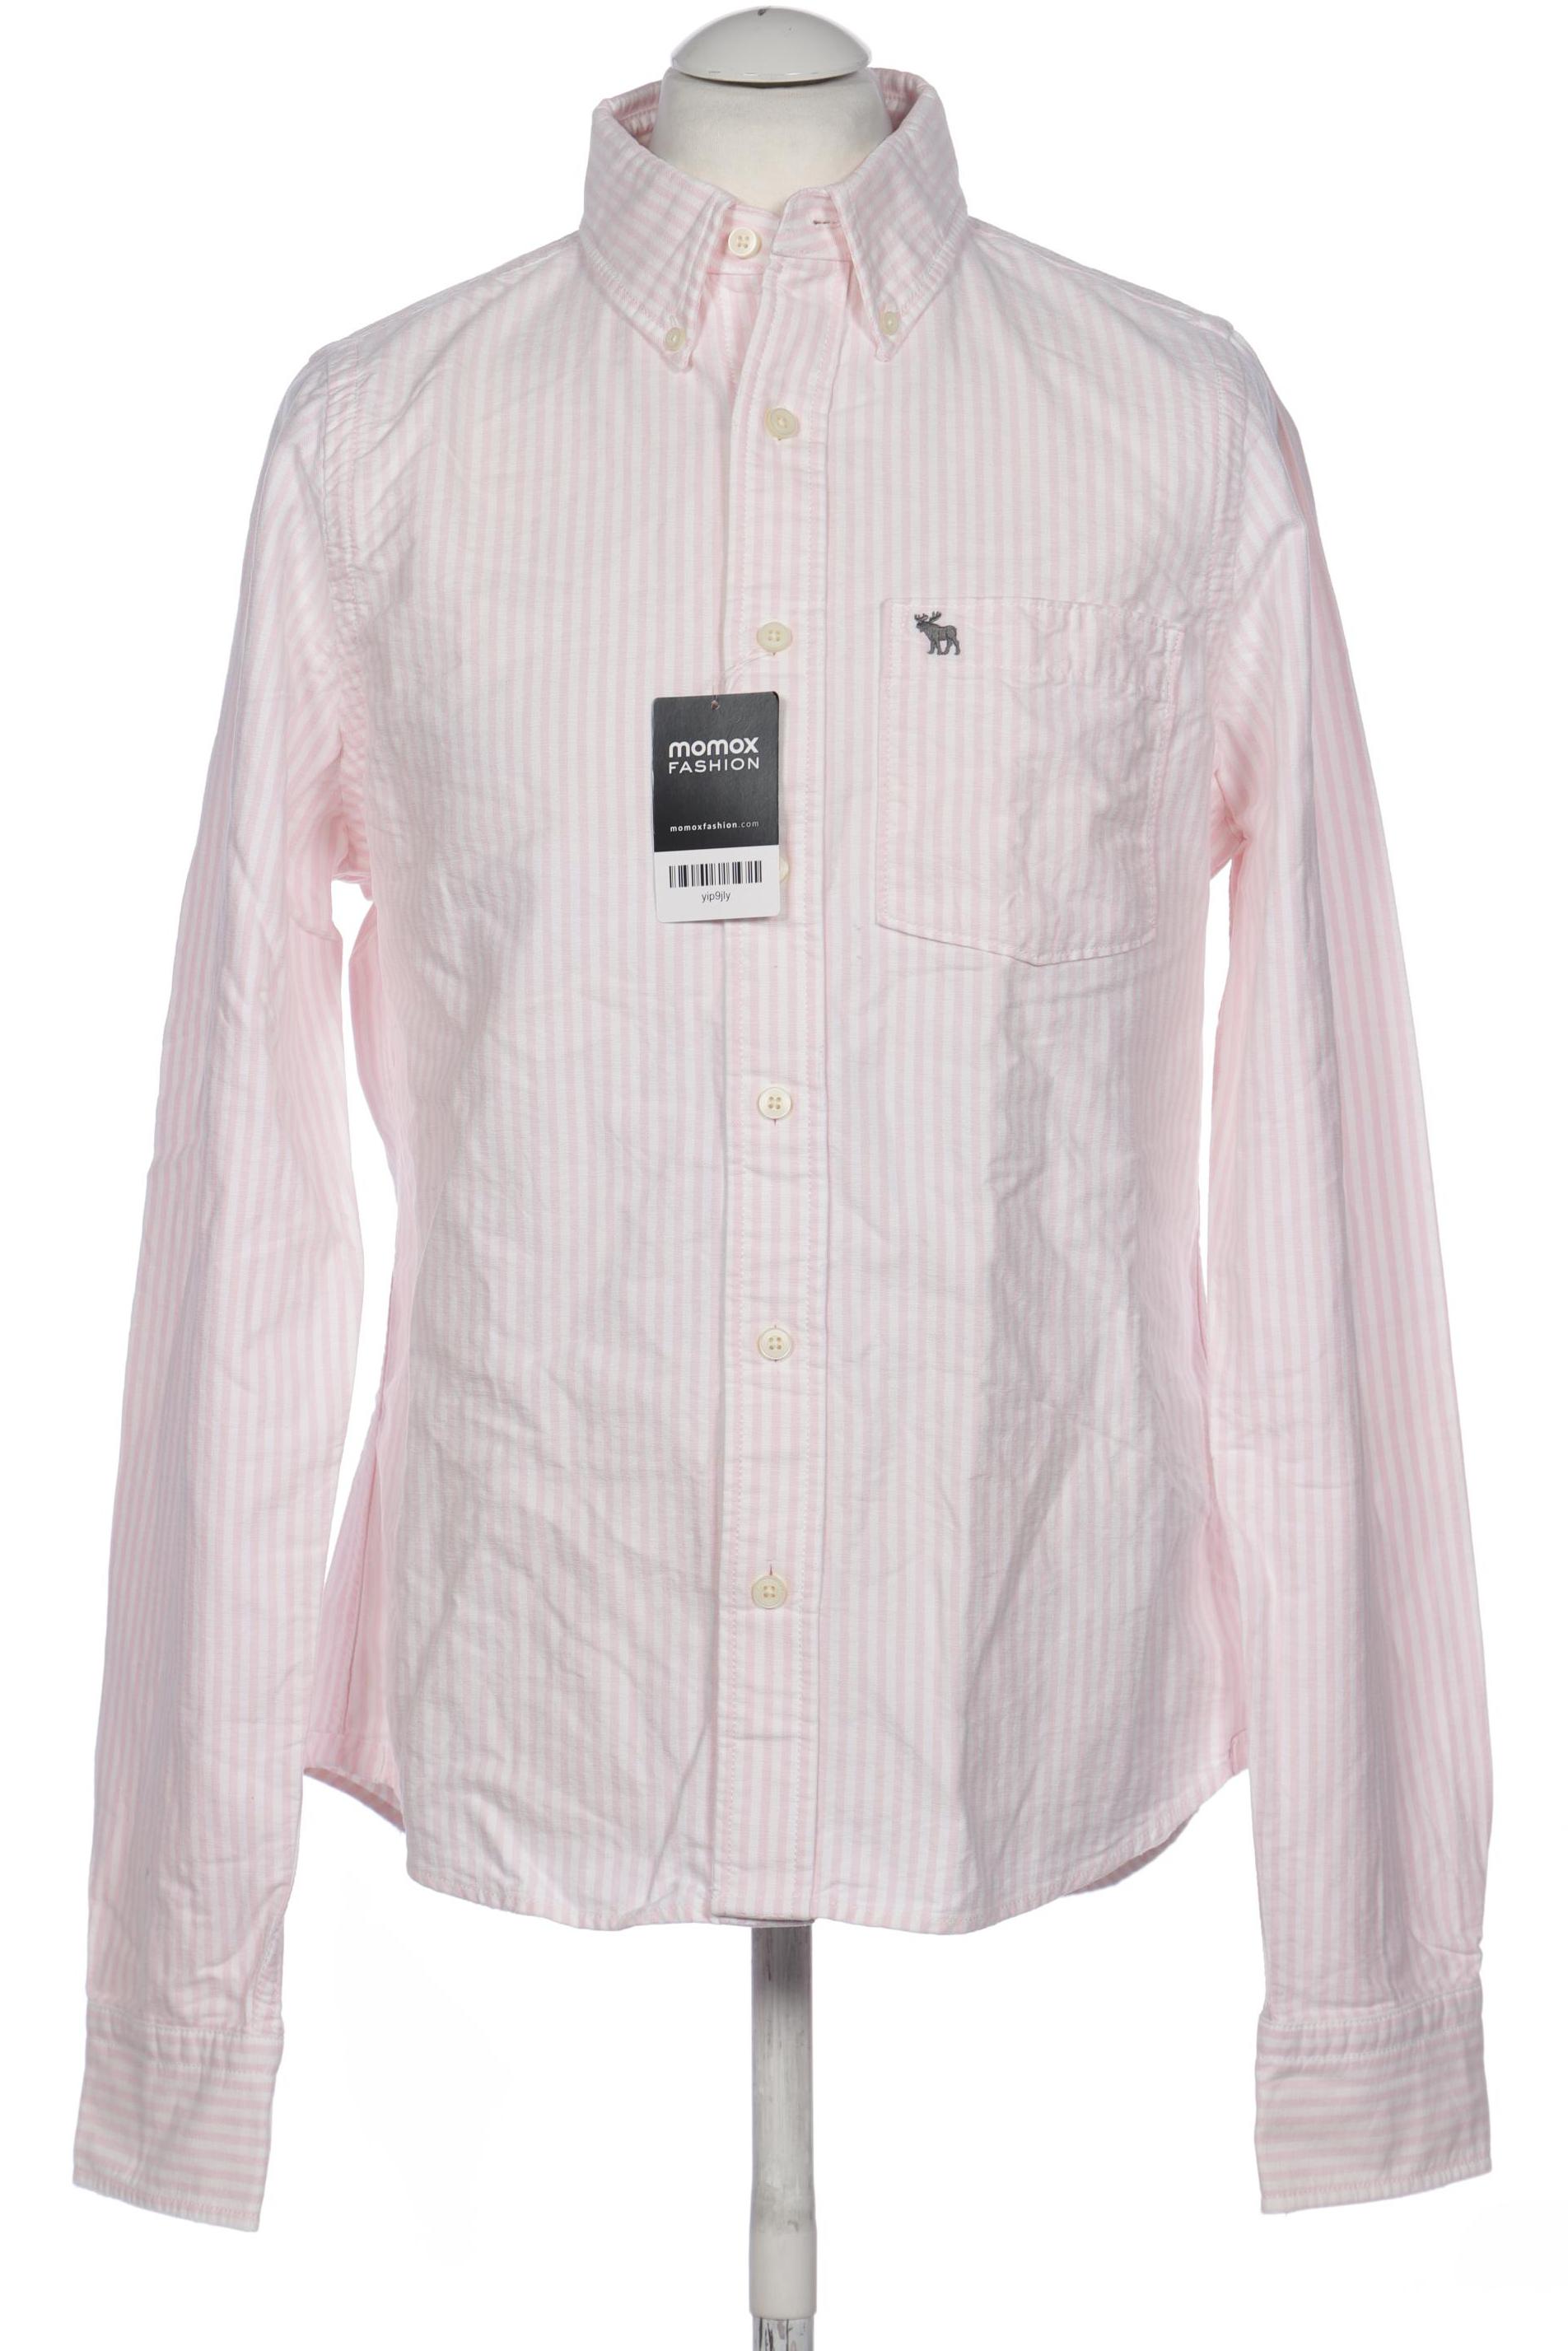 Abercrombie & Fitch Herren Hemd, pink von Abercrombie & Fitch